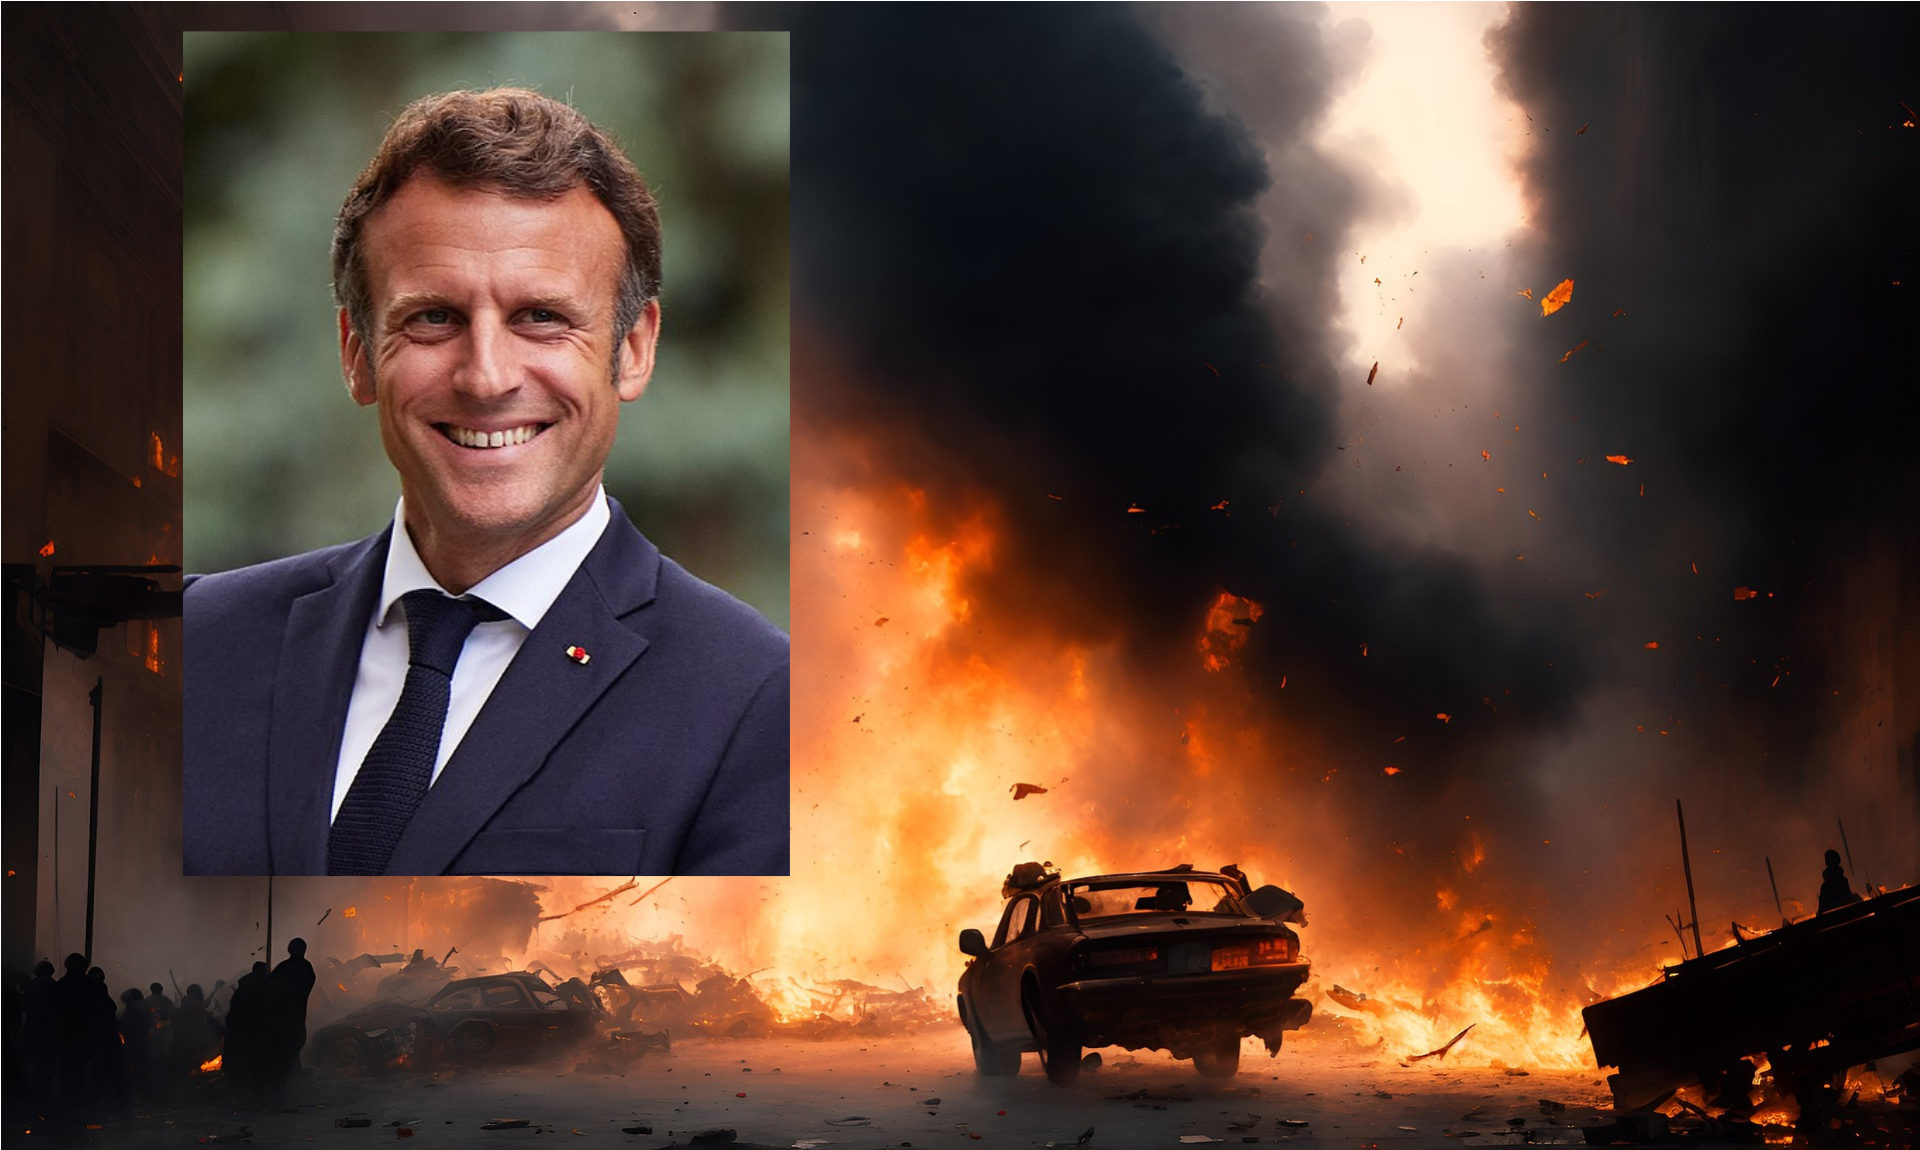 płonąca ulica i zdjęcie Emmanuela Macrona